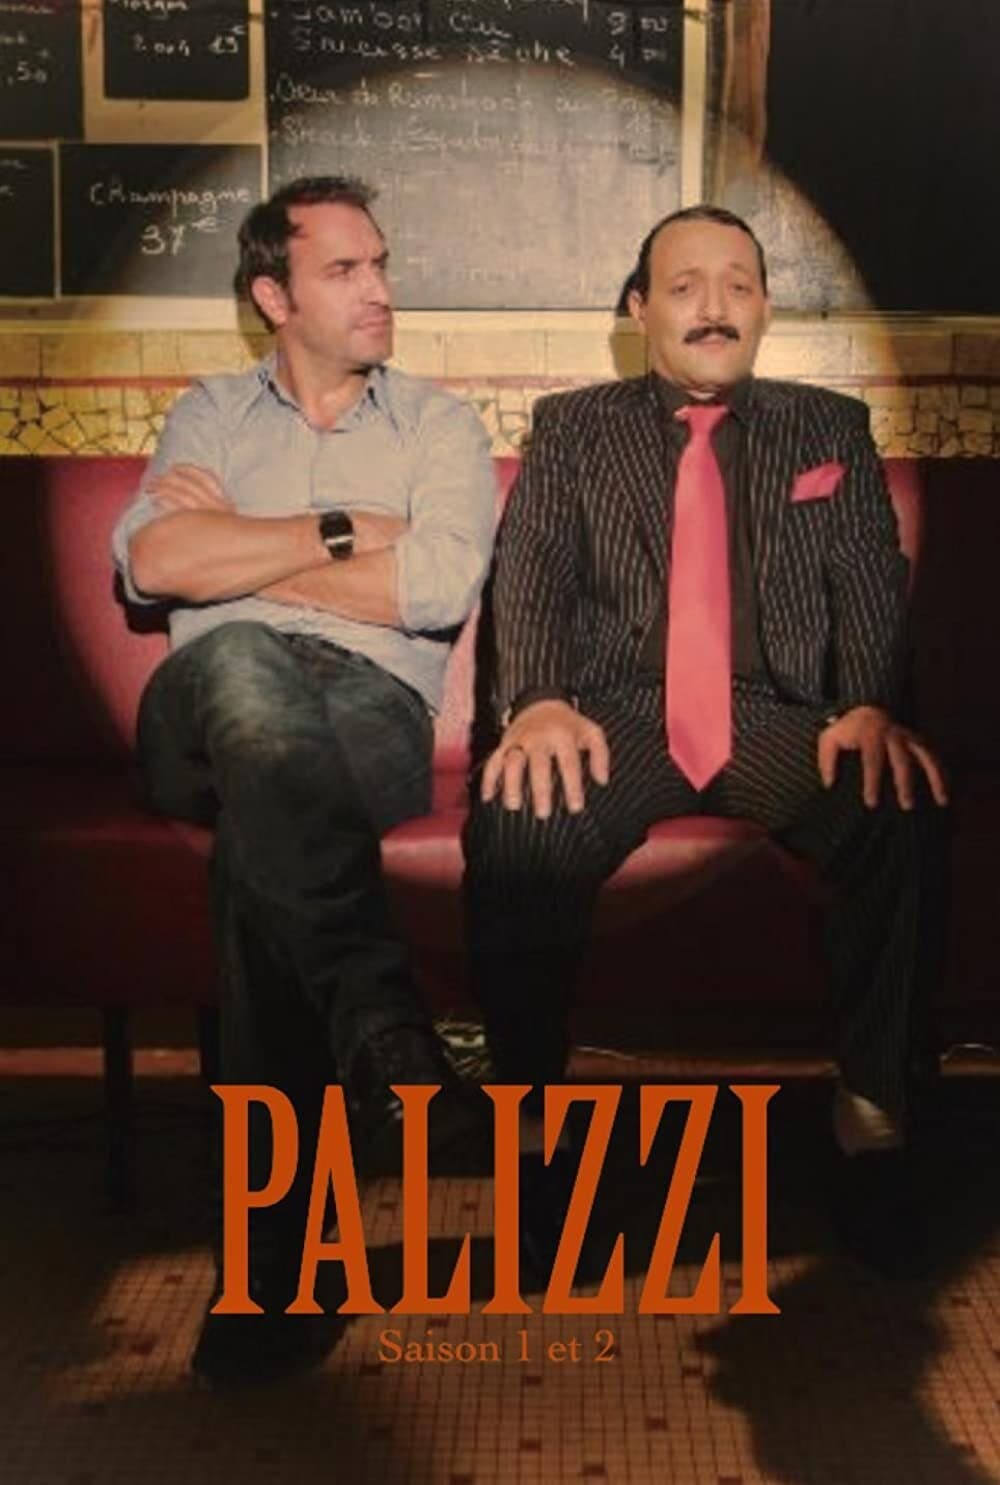 Palizzi (2007)